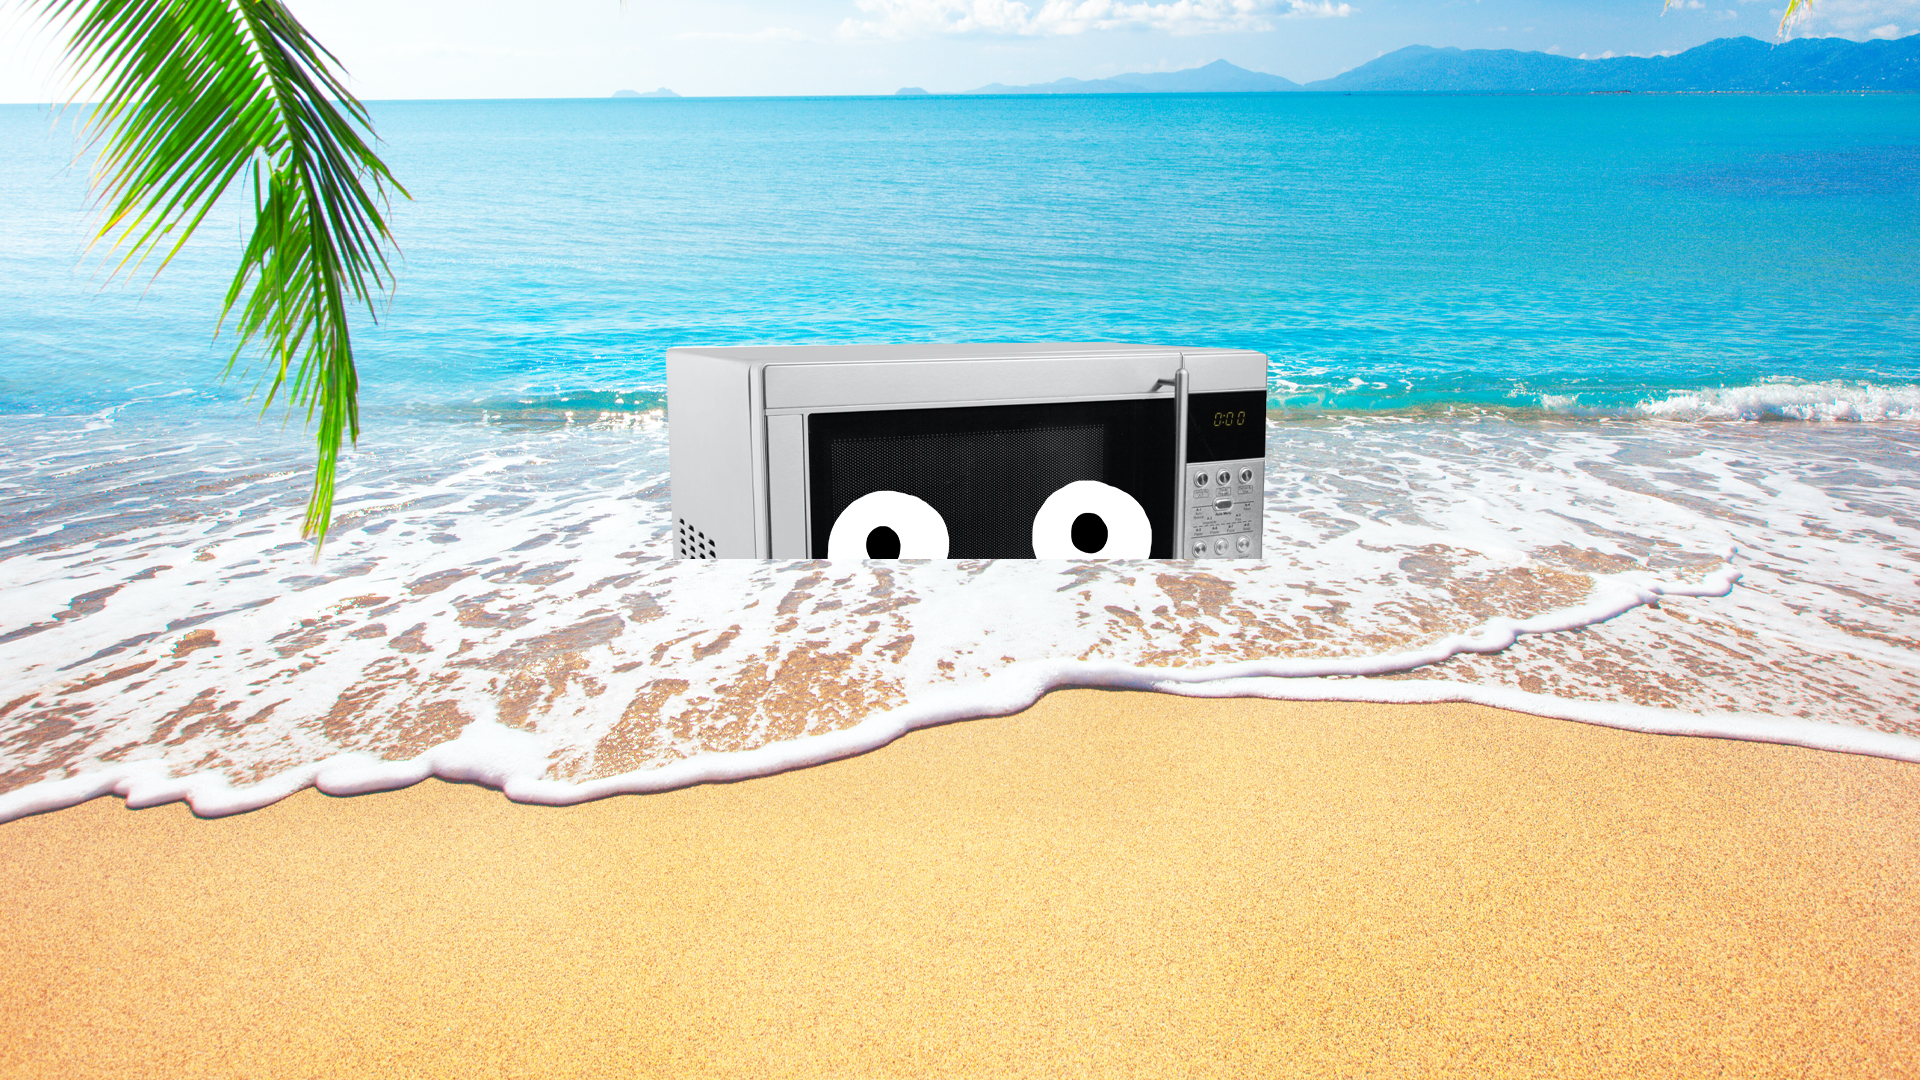 A microwave on a beach